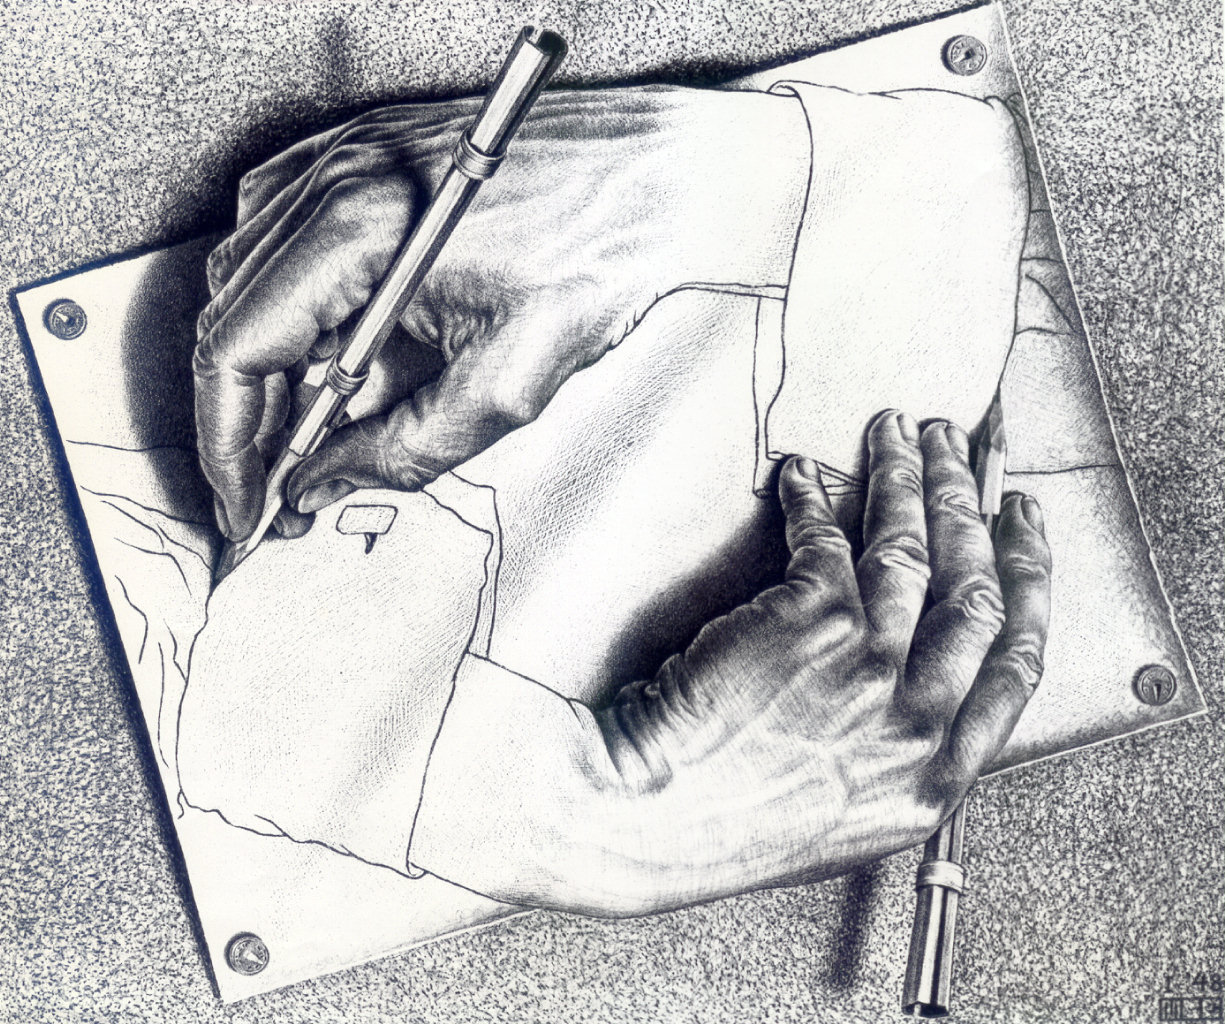 Escher's drawing hands